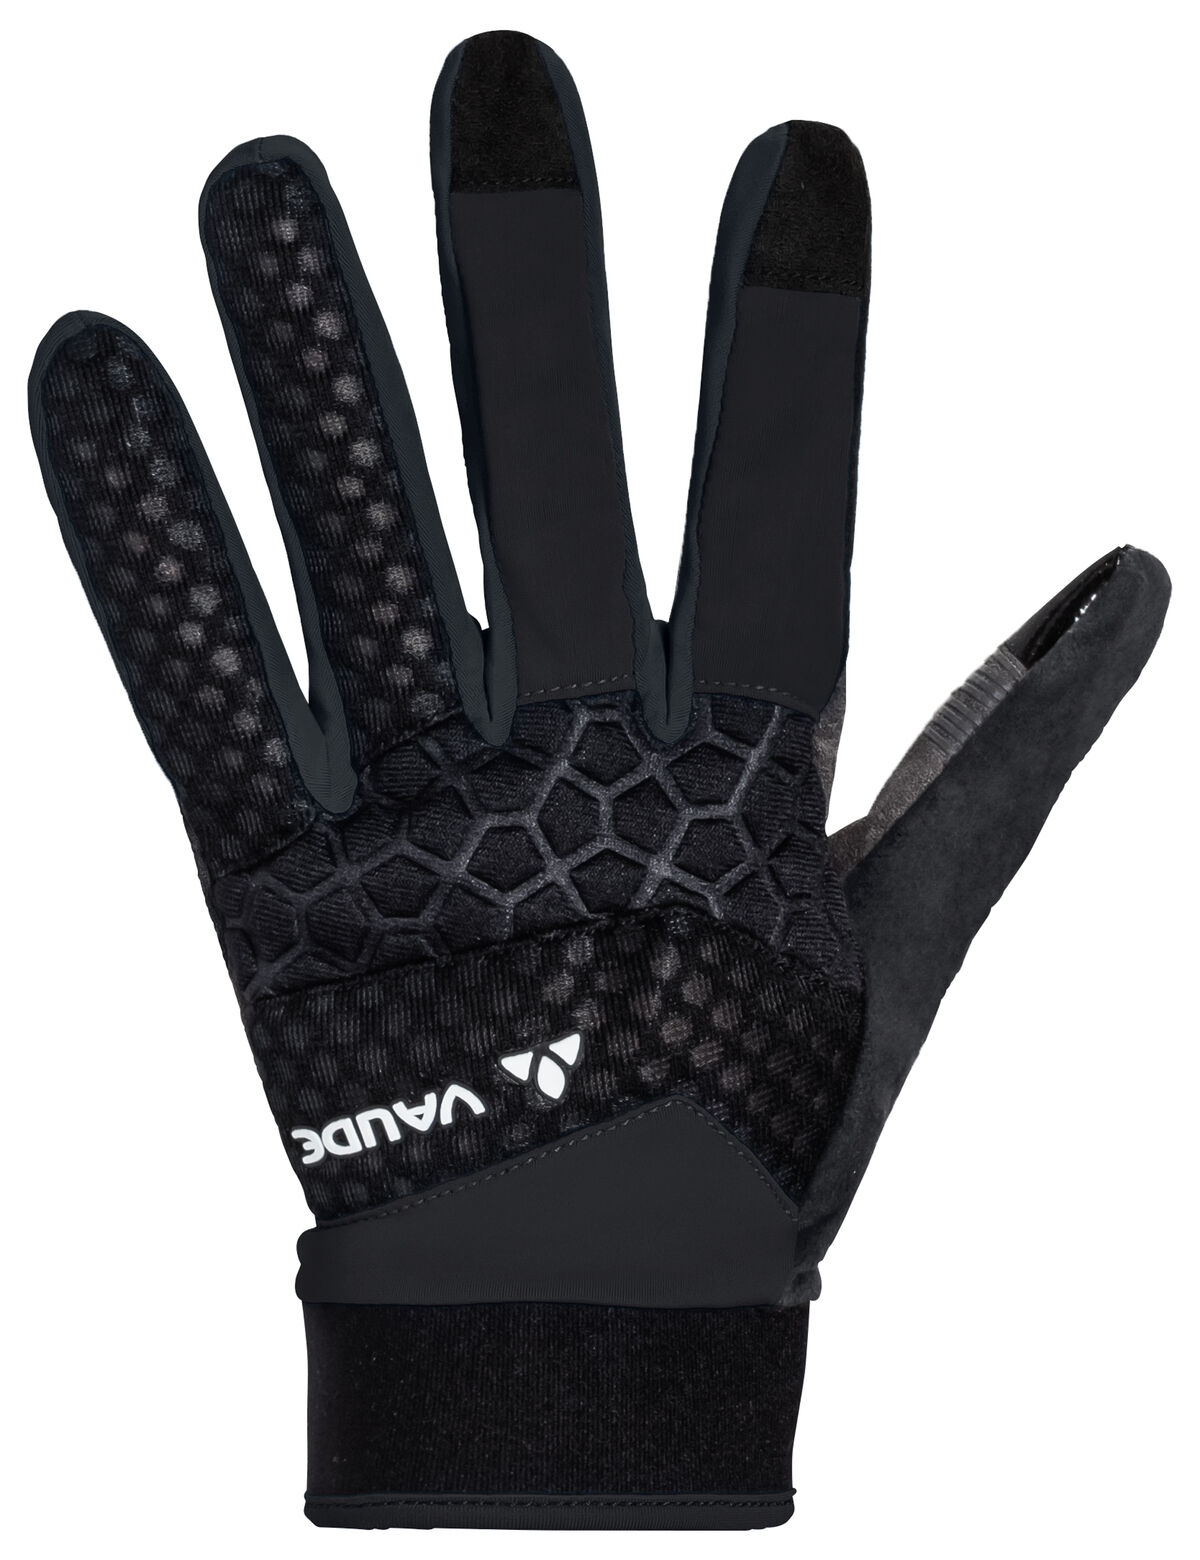 Vaude - Men's Cardo Gloves II - Gloves